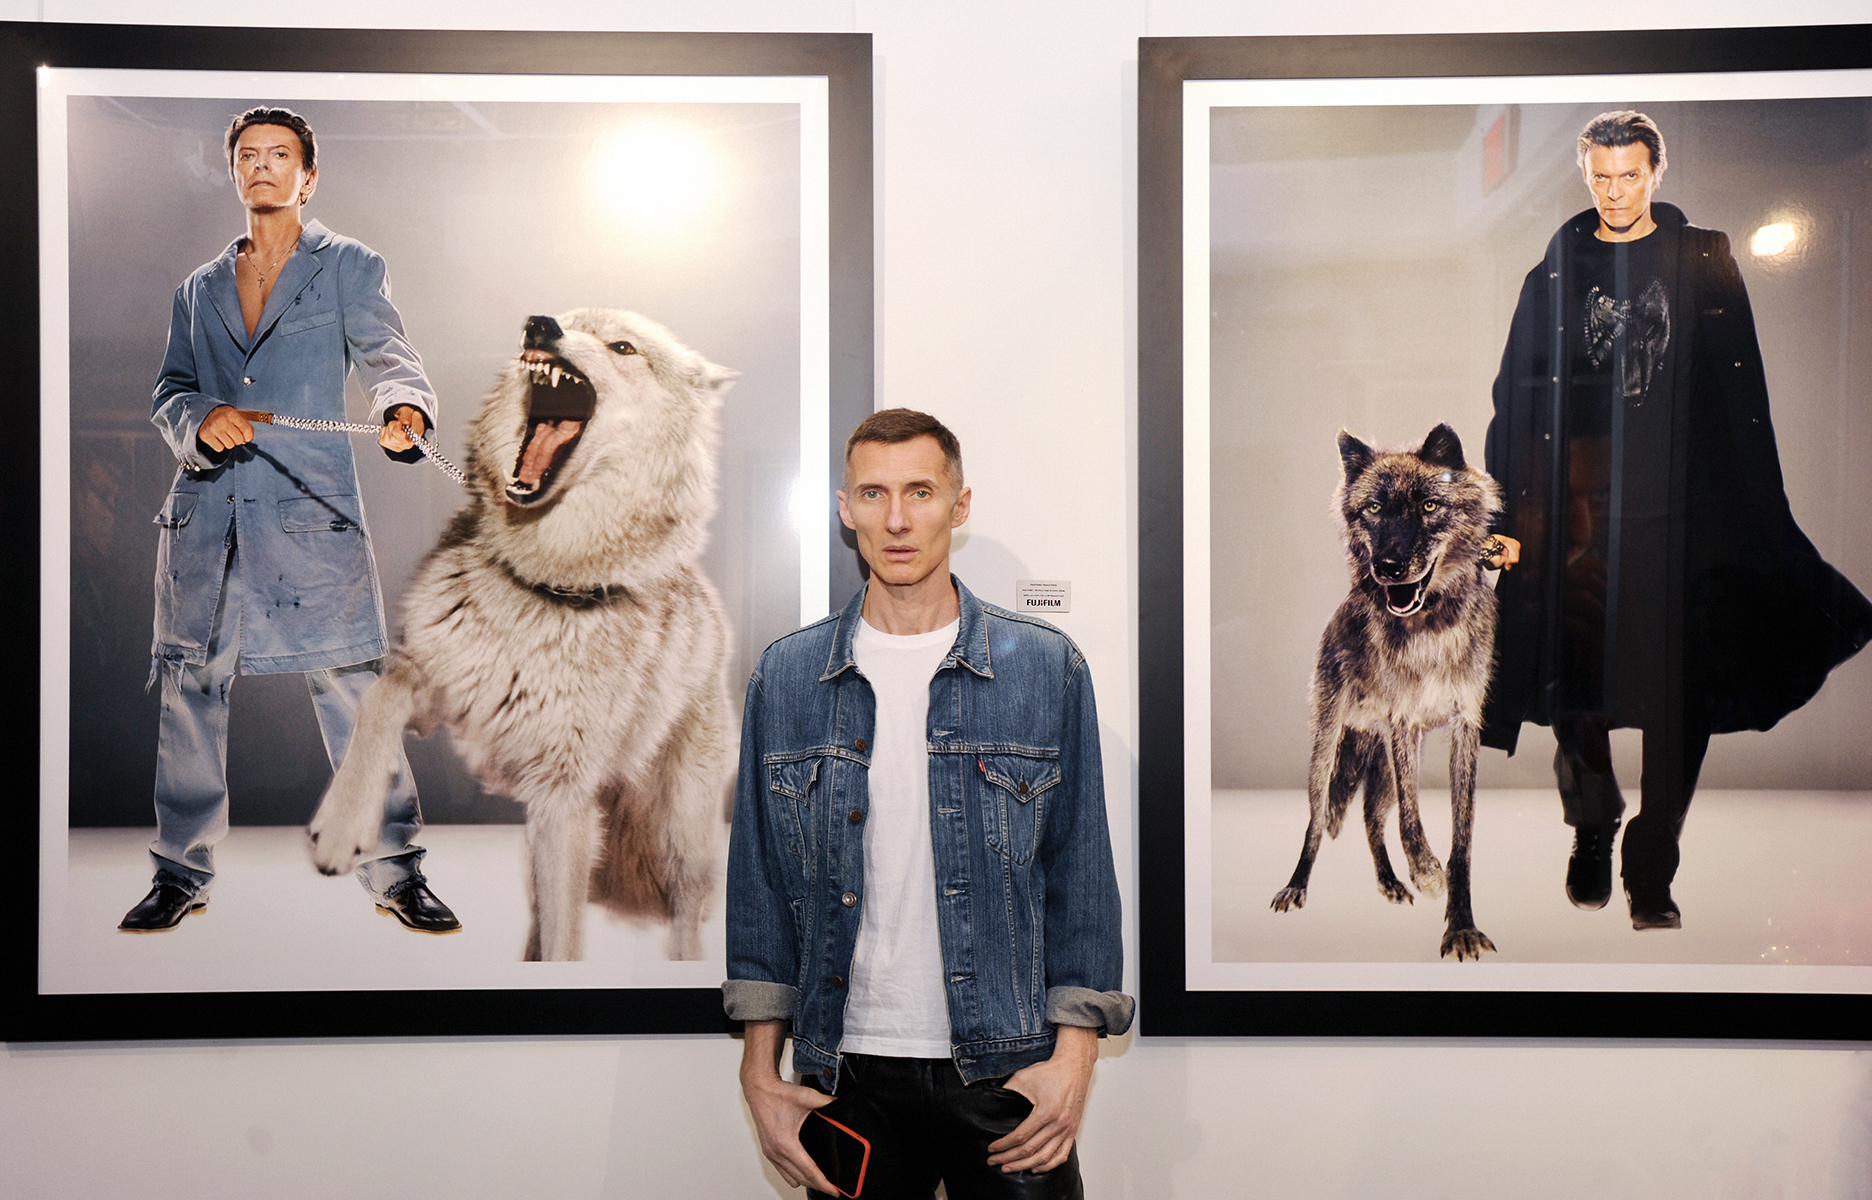 Le photographe Markus Klinko devant ses photos de David Bowie